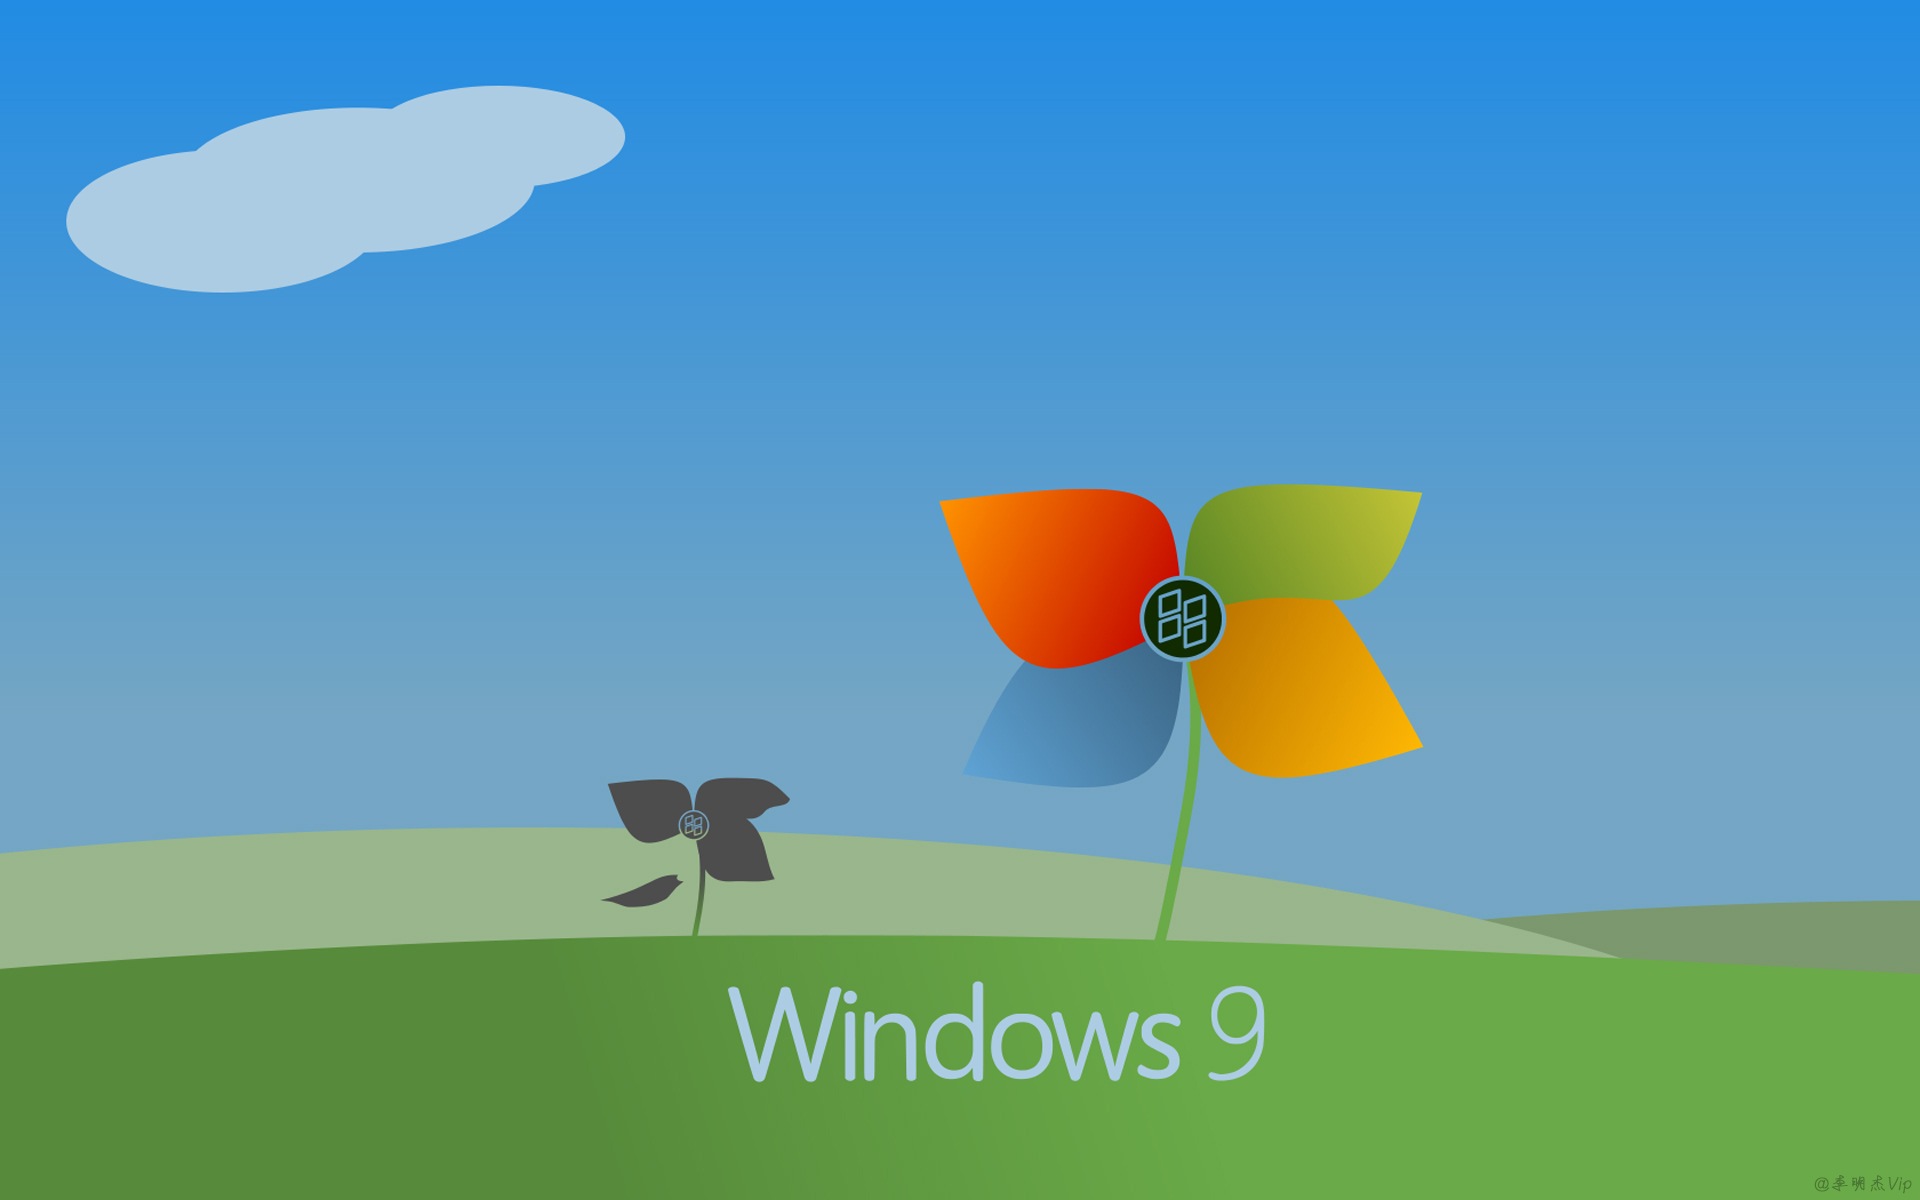 微软 Windows 9 系统主题 高清壁纸5 - 1920x1200